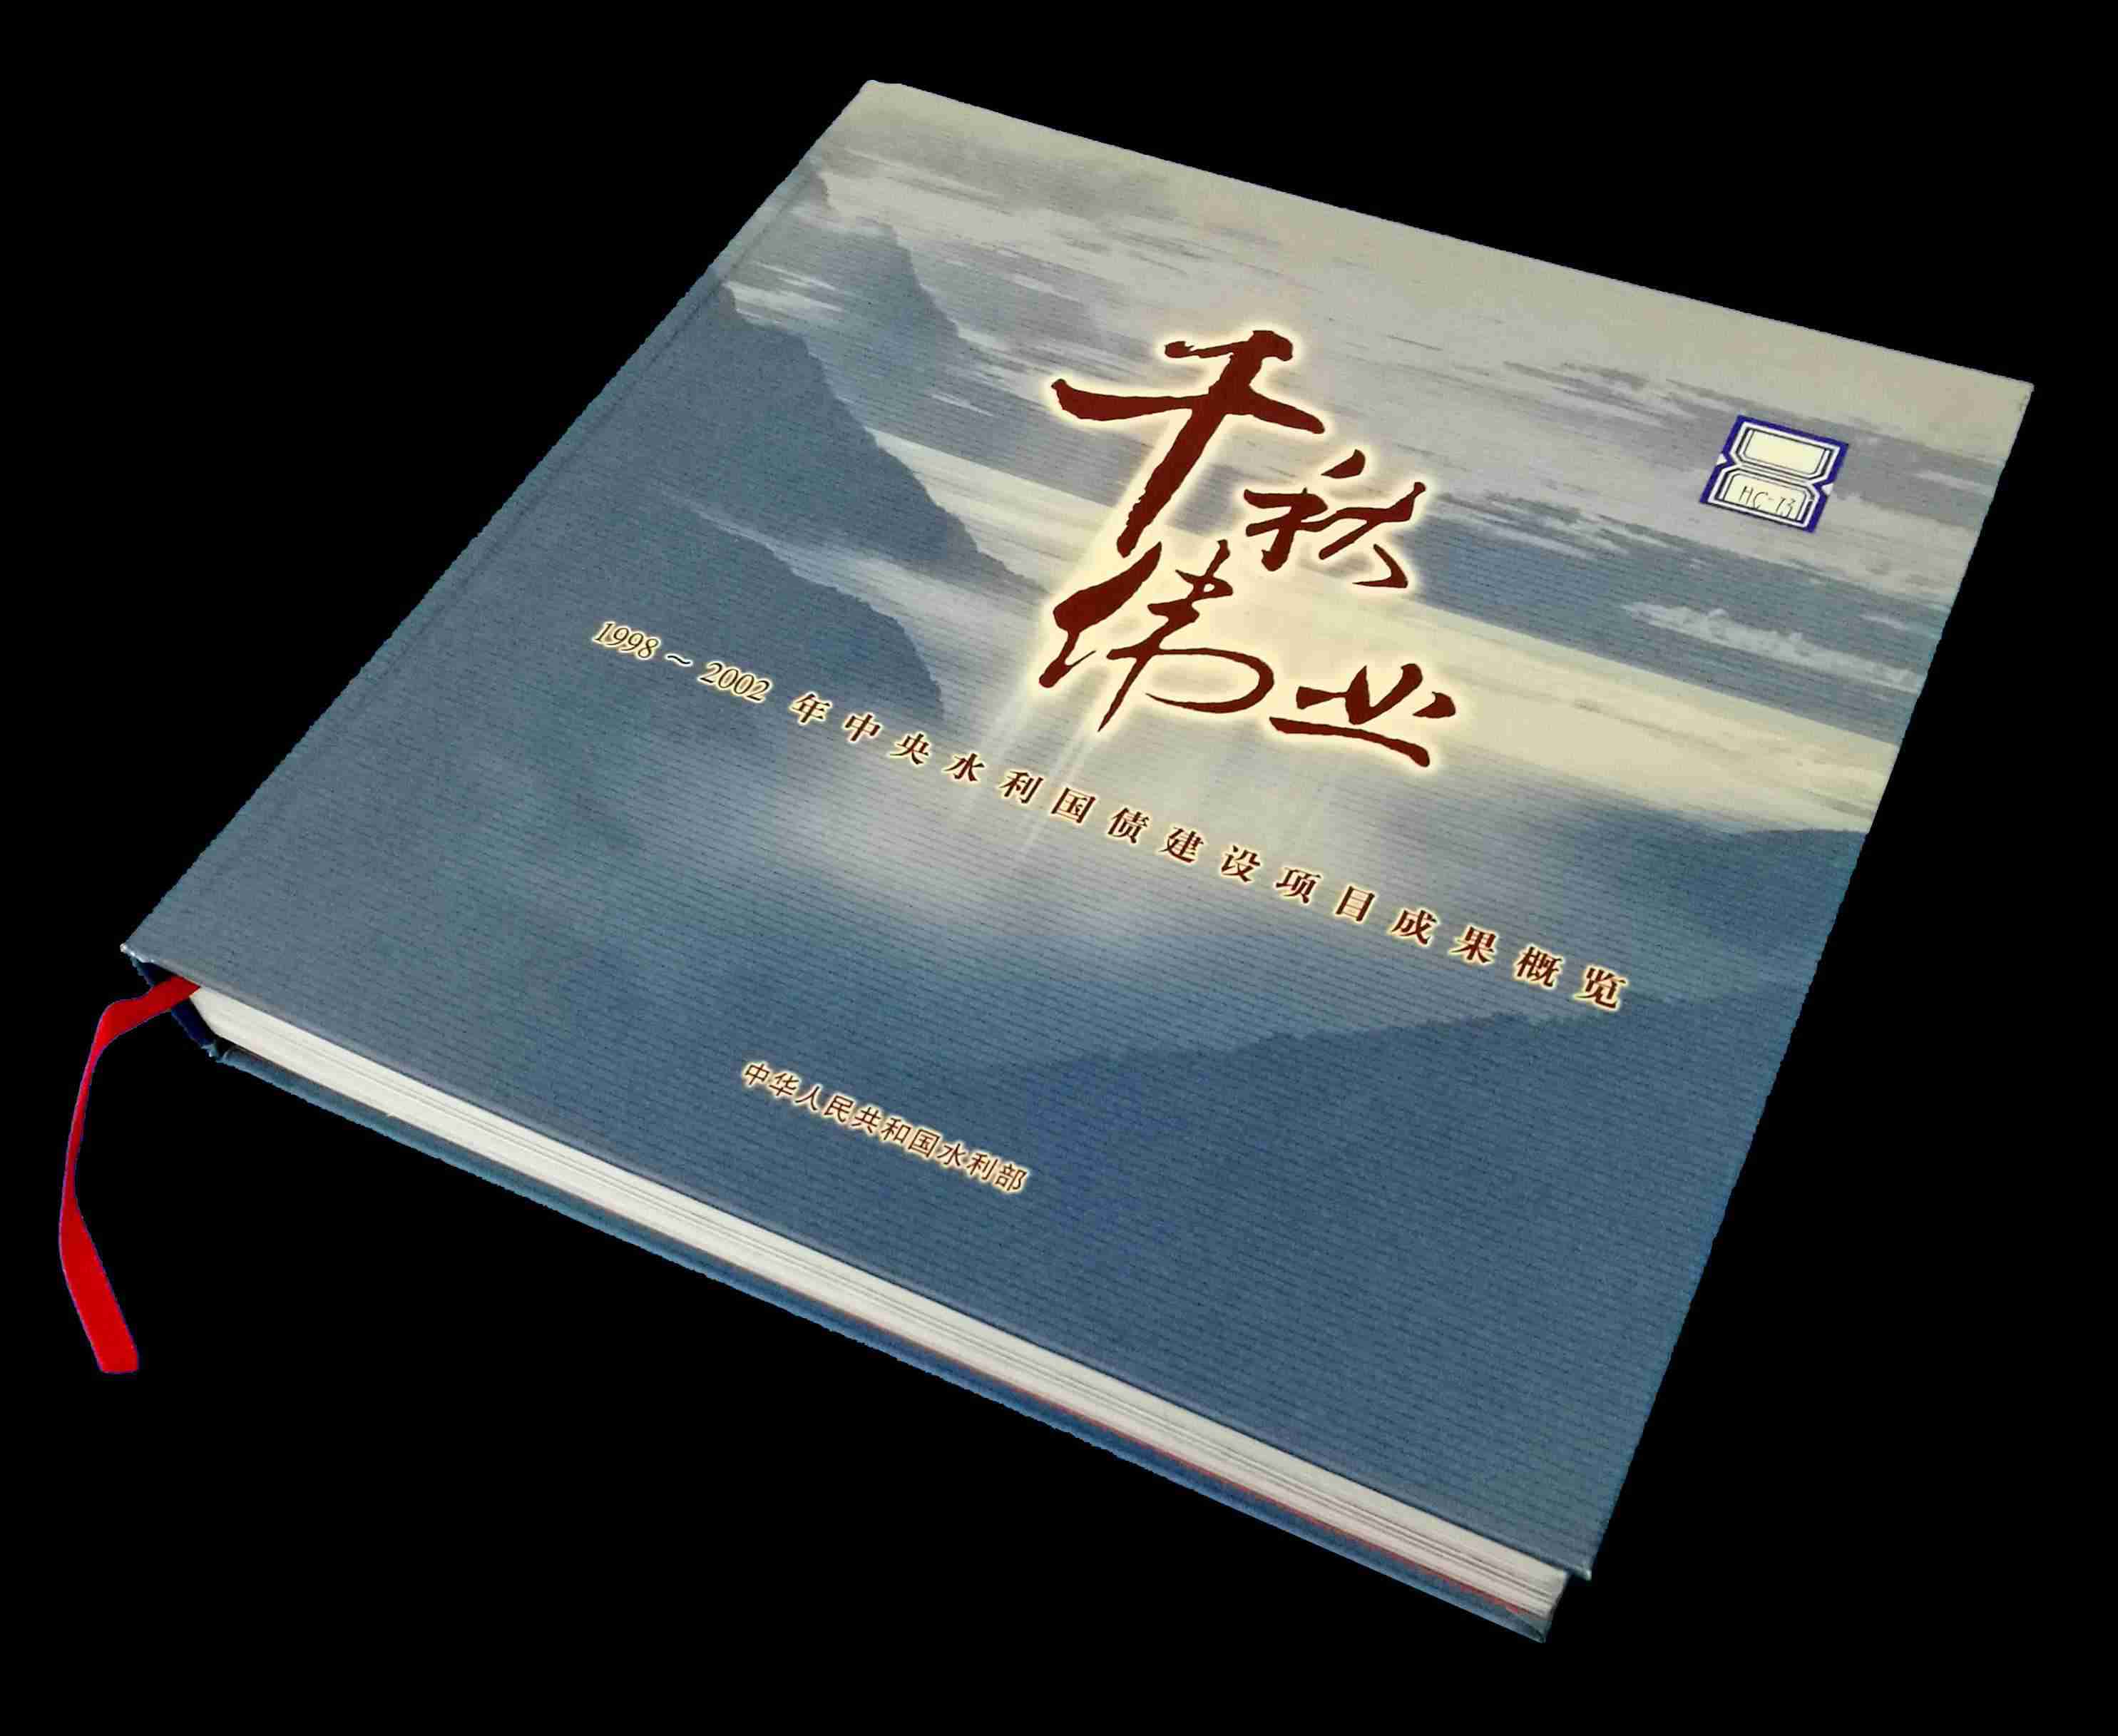 1998-2002年中(zhōng)央水利國債建設項目成果概覽《千秋偉業》